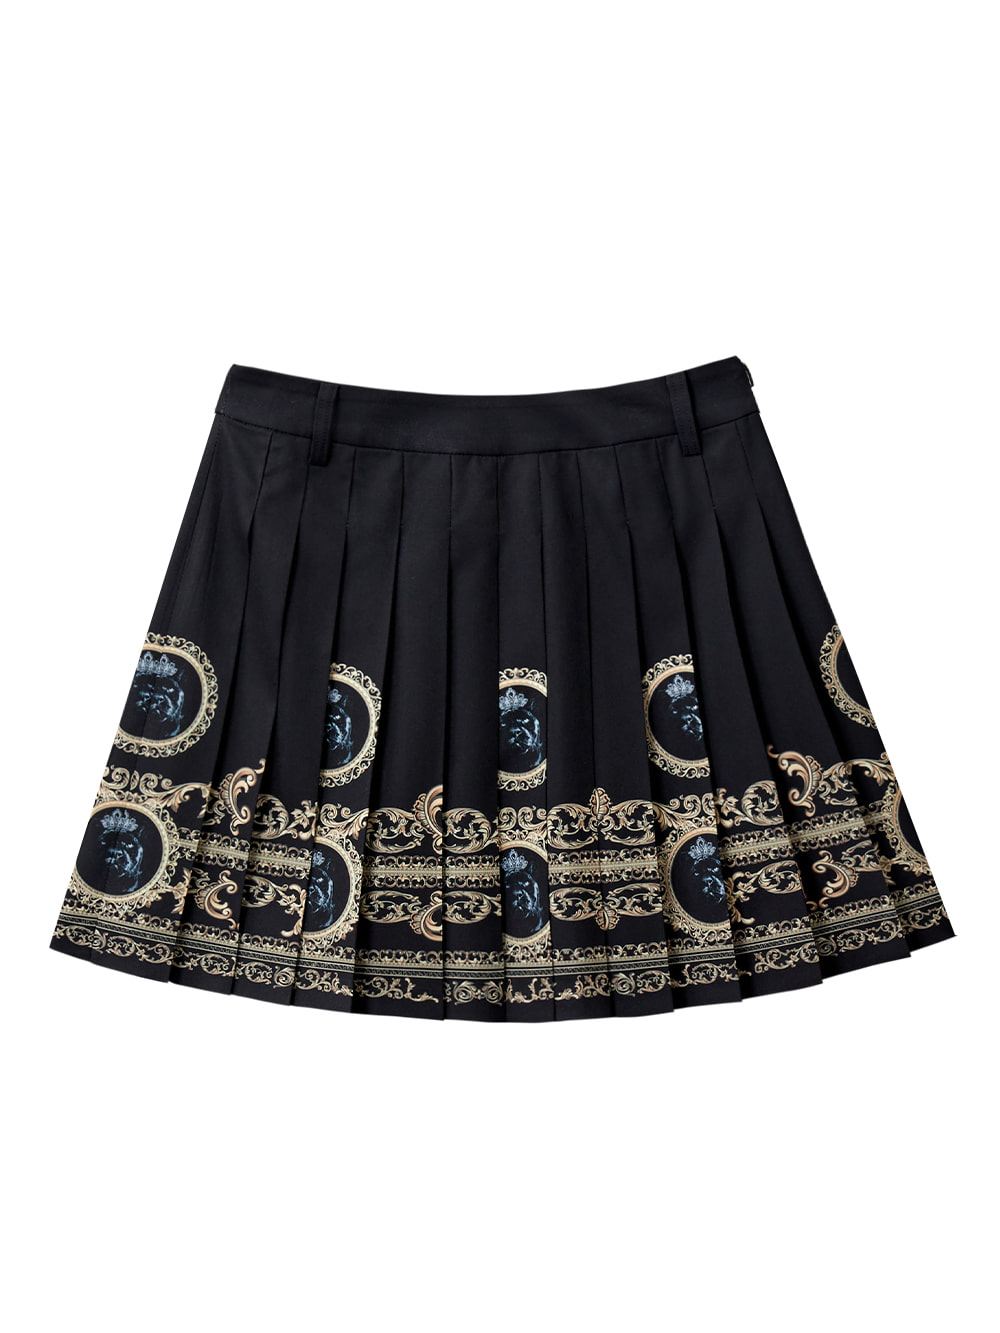 UTAA Gold Empire Pleats Skirt (UC2SKF330BK)